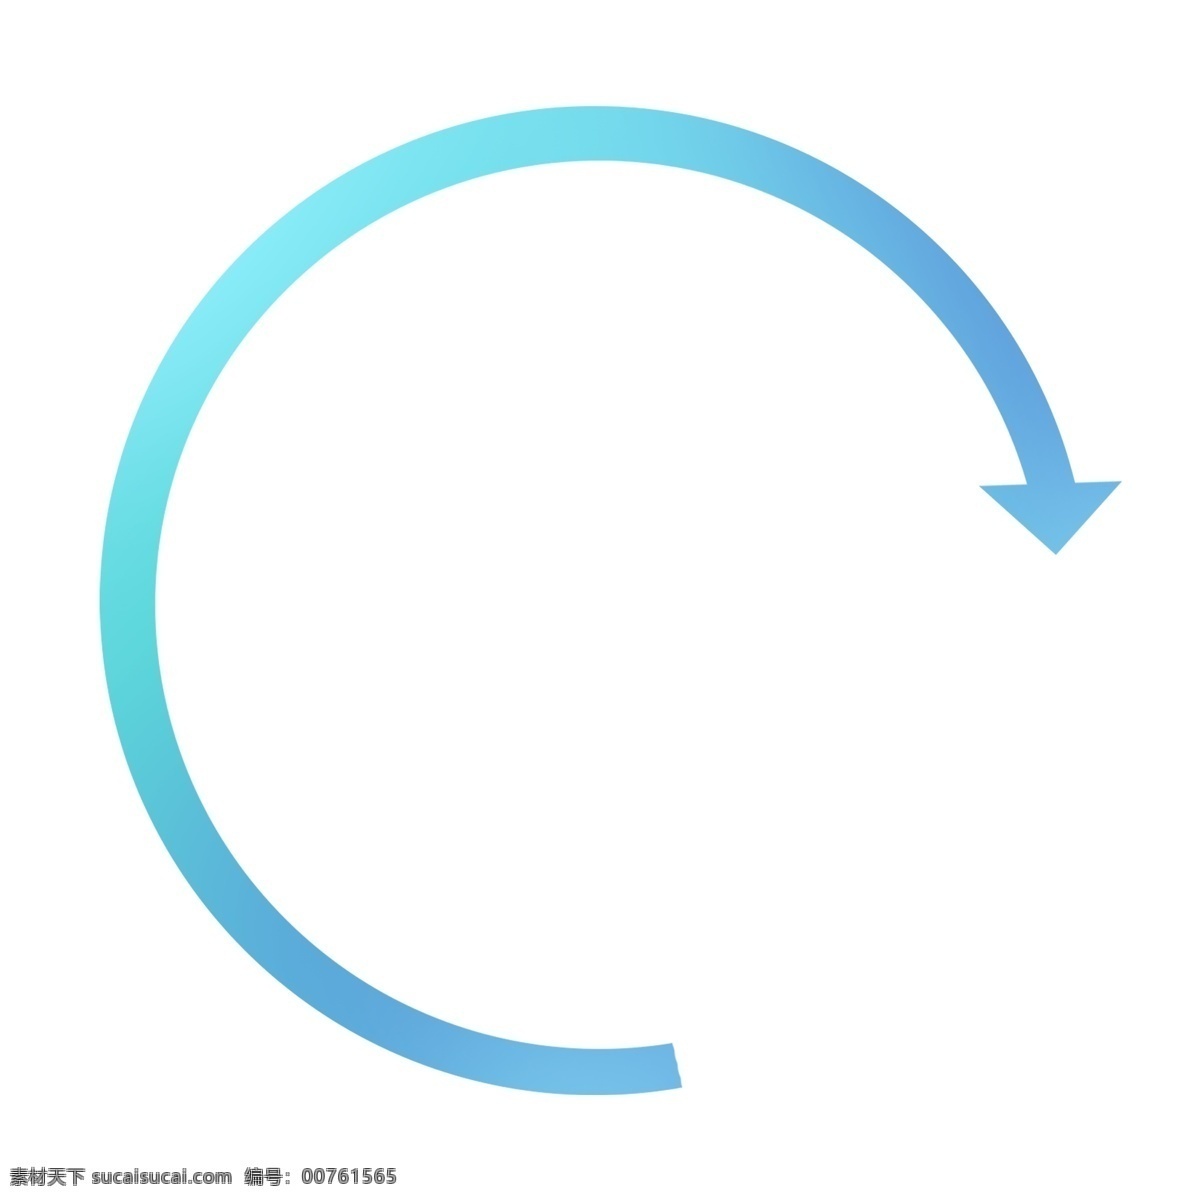 蓝色 渐 变色 圆形 环状 卡通 箭头 蓝色箭头 环形 环形箭头 环状箭头 卡通箭头 环形标志 环形方向